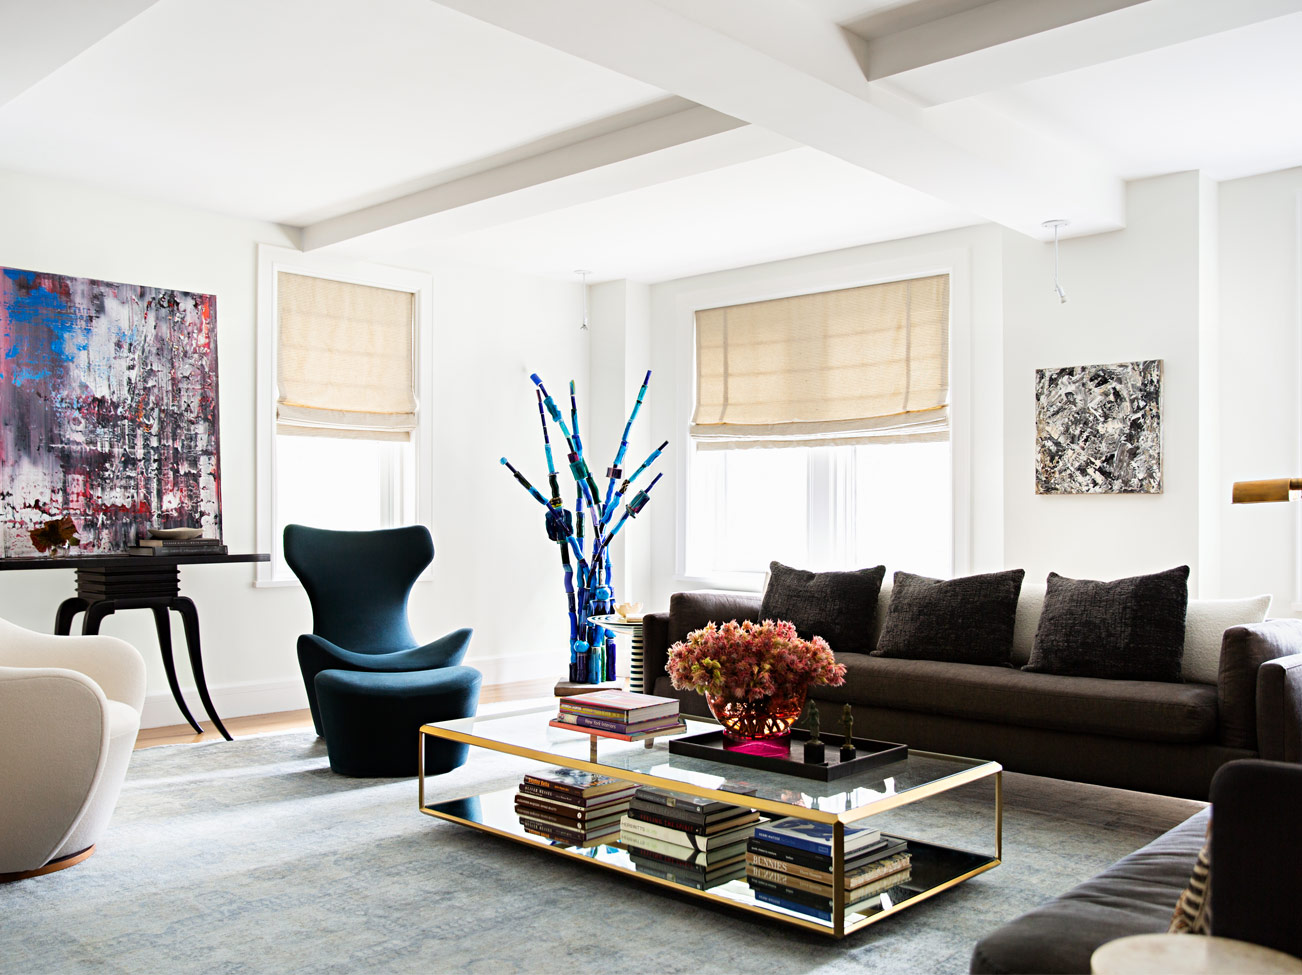 Salon blanc avec plafond à caissons, sofa brun, fauteuils modernes, table basse en verre au rebord doré et œuvres abstraites.